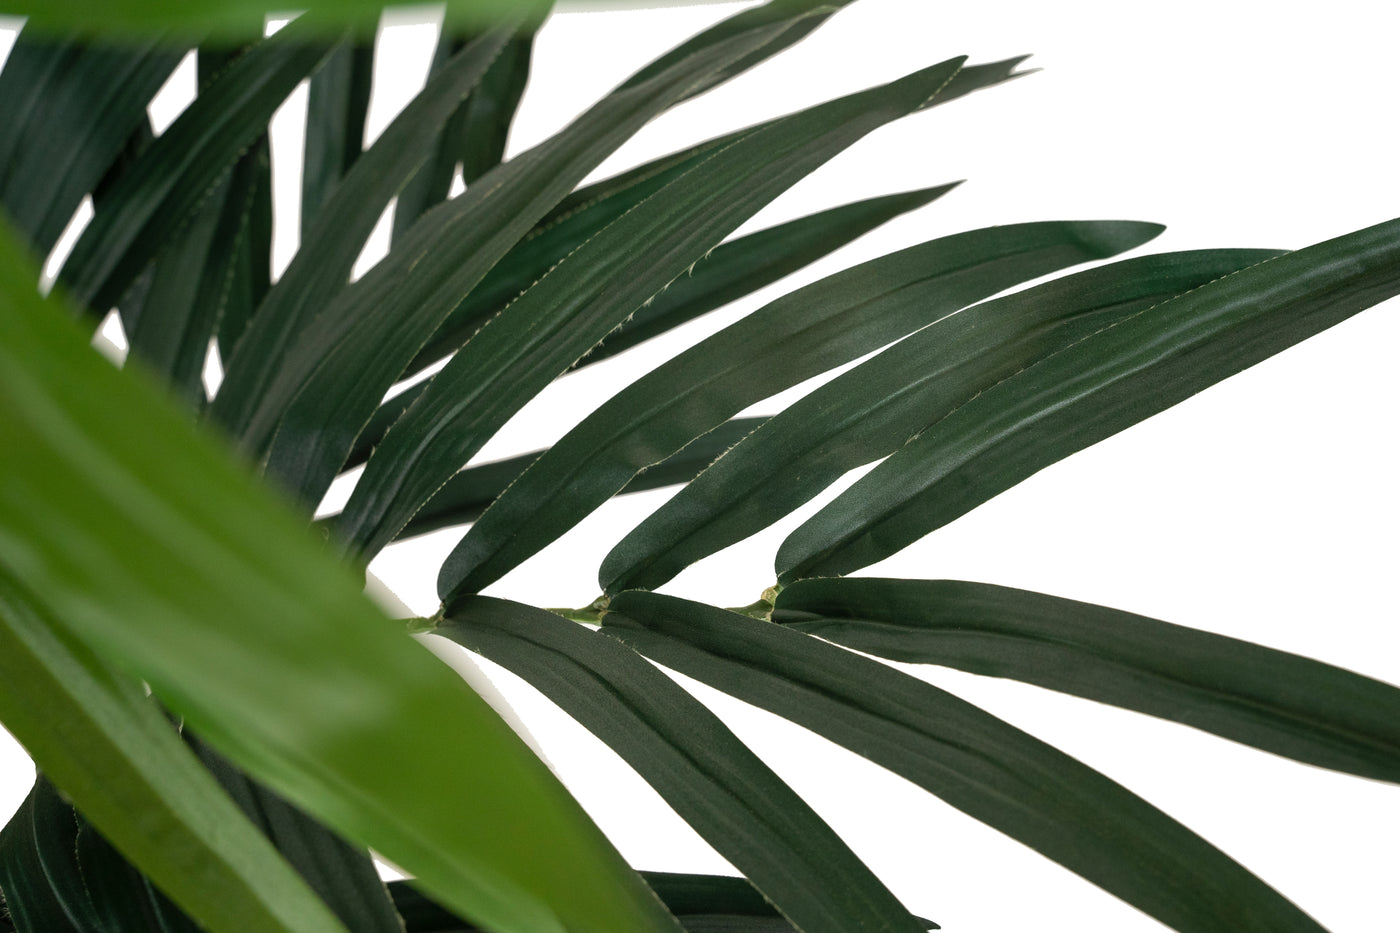 Palm artificial H120cm Kentia cu 12 frunze